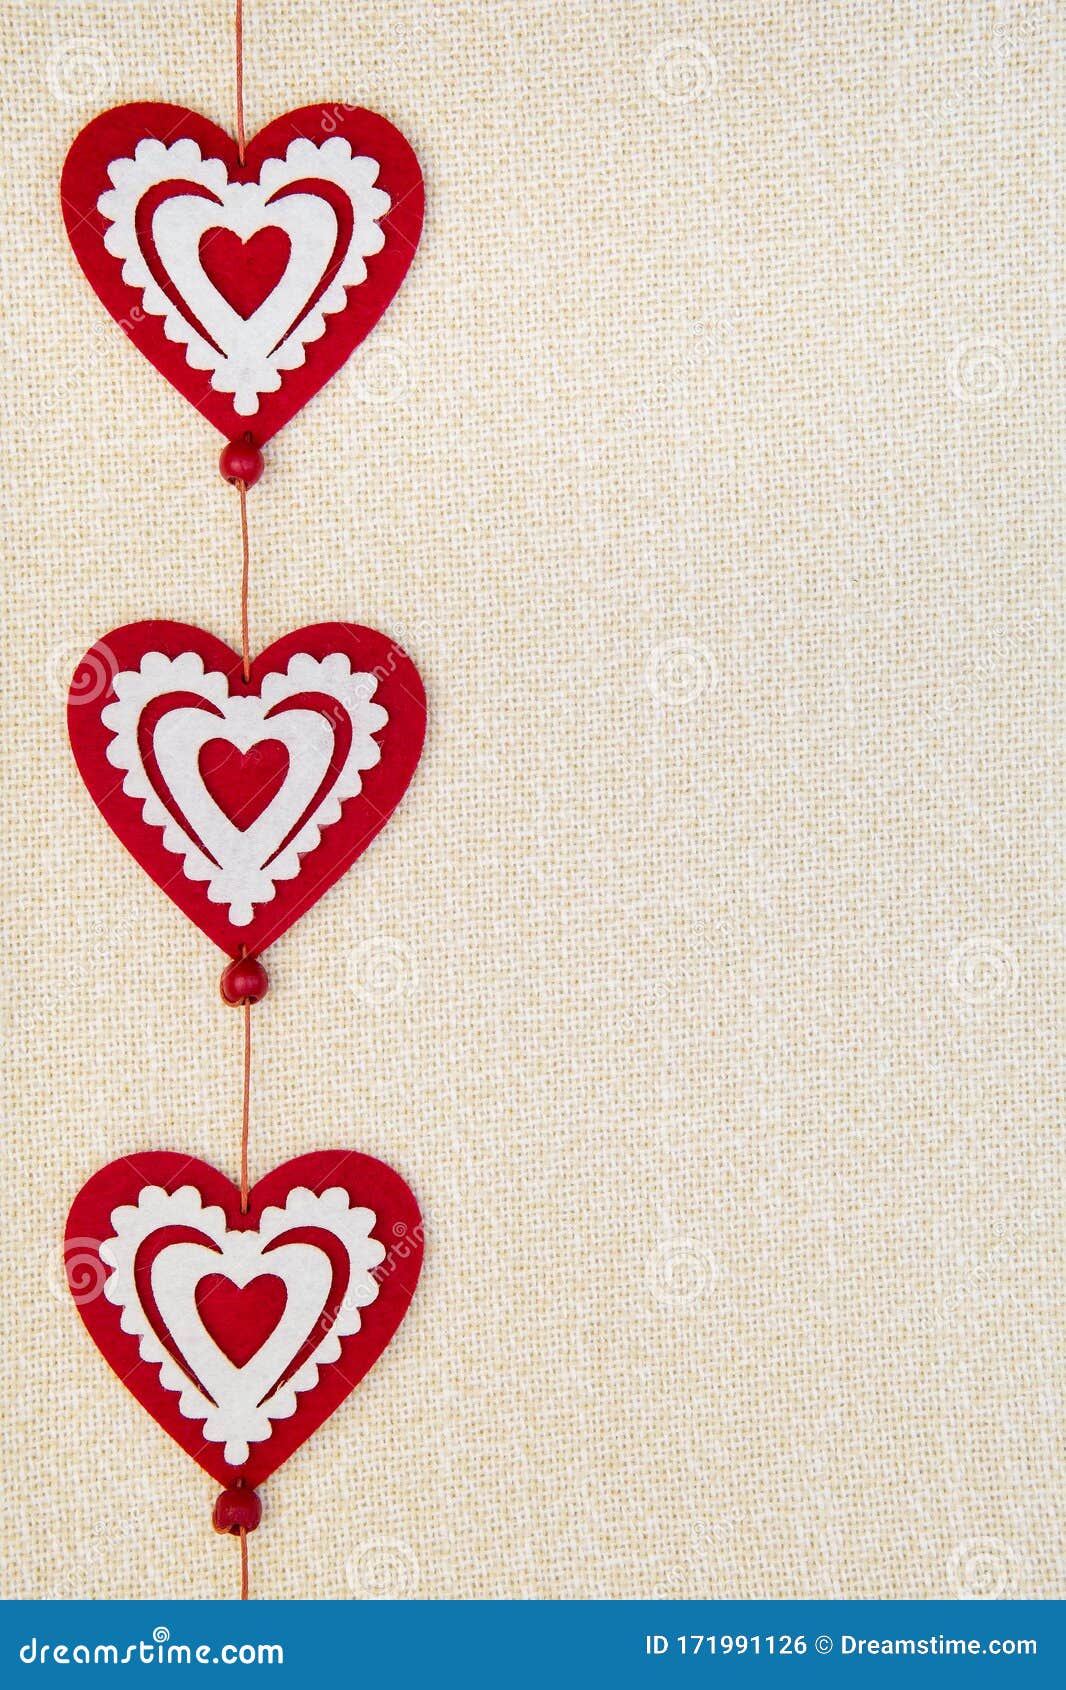 Những tấm thiệp chúc mừng Valentine đáng yêu và sáng tạo luôn khiến cho người nhận cảm thấy hạnh phúc và đặc biệt. Hãy mua các mẫu thiệp chúc mừng Valentine độc đáo và đẹp mắt tại đây để có thể gửi đến người ấy những lời chúc tốt đẹp nhất trong ngày Tình yêu này.